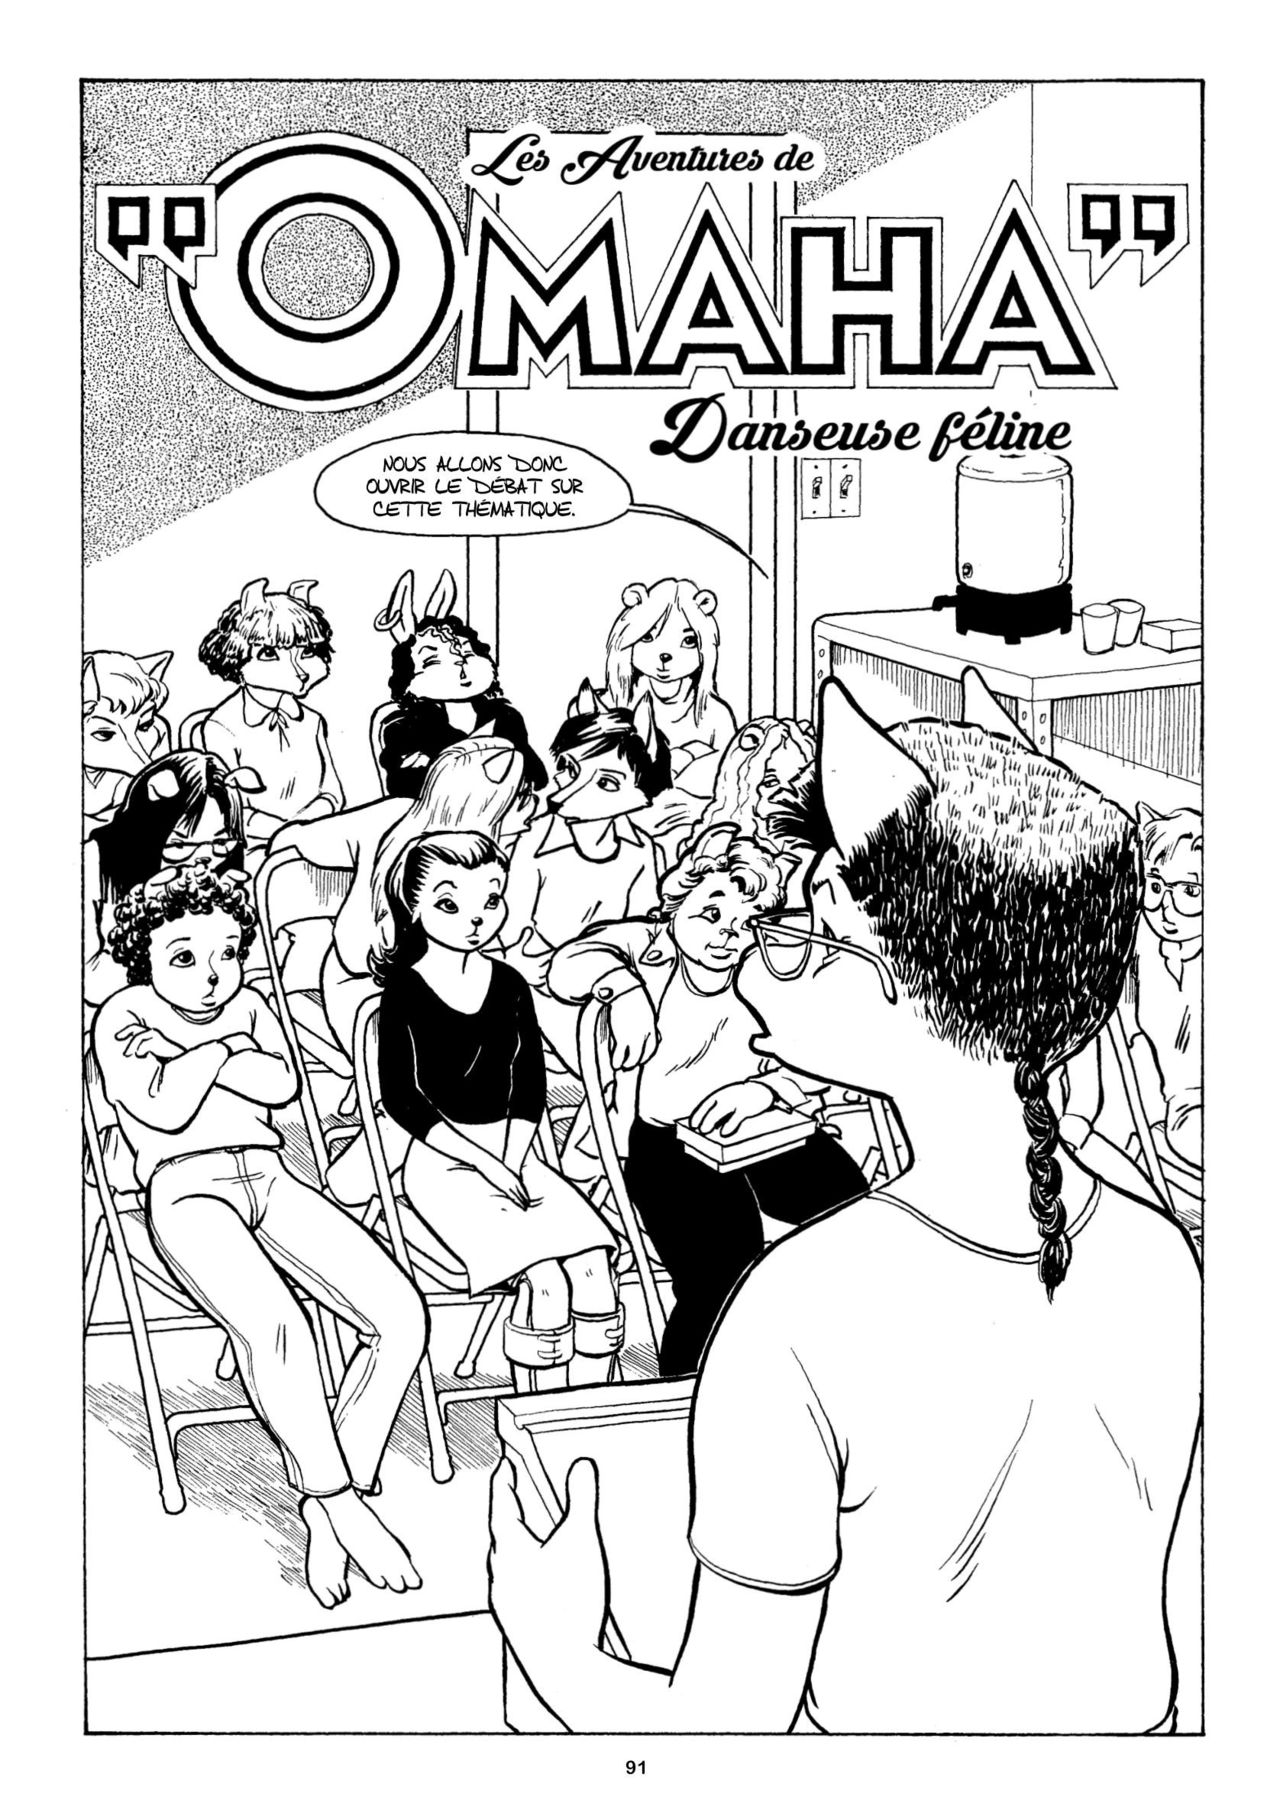 Les aventures complètes de «Omaha» danseuse féline 03 numero d'image 92